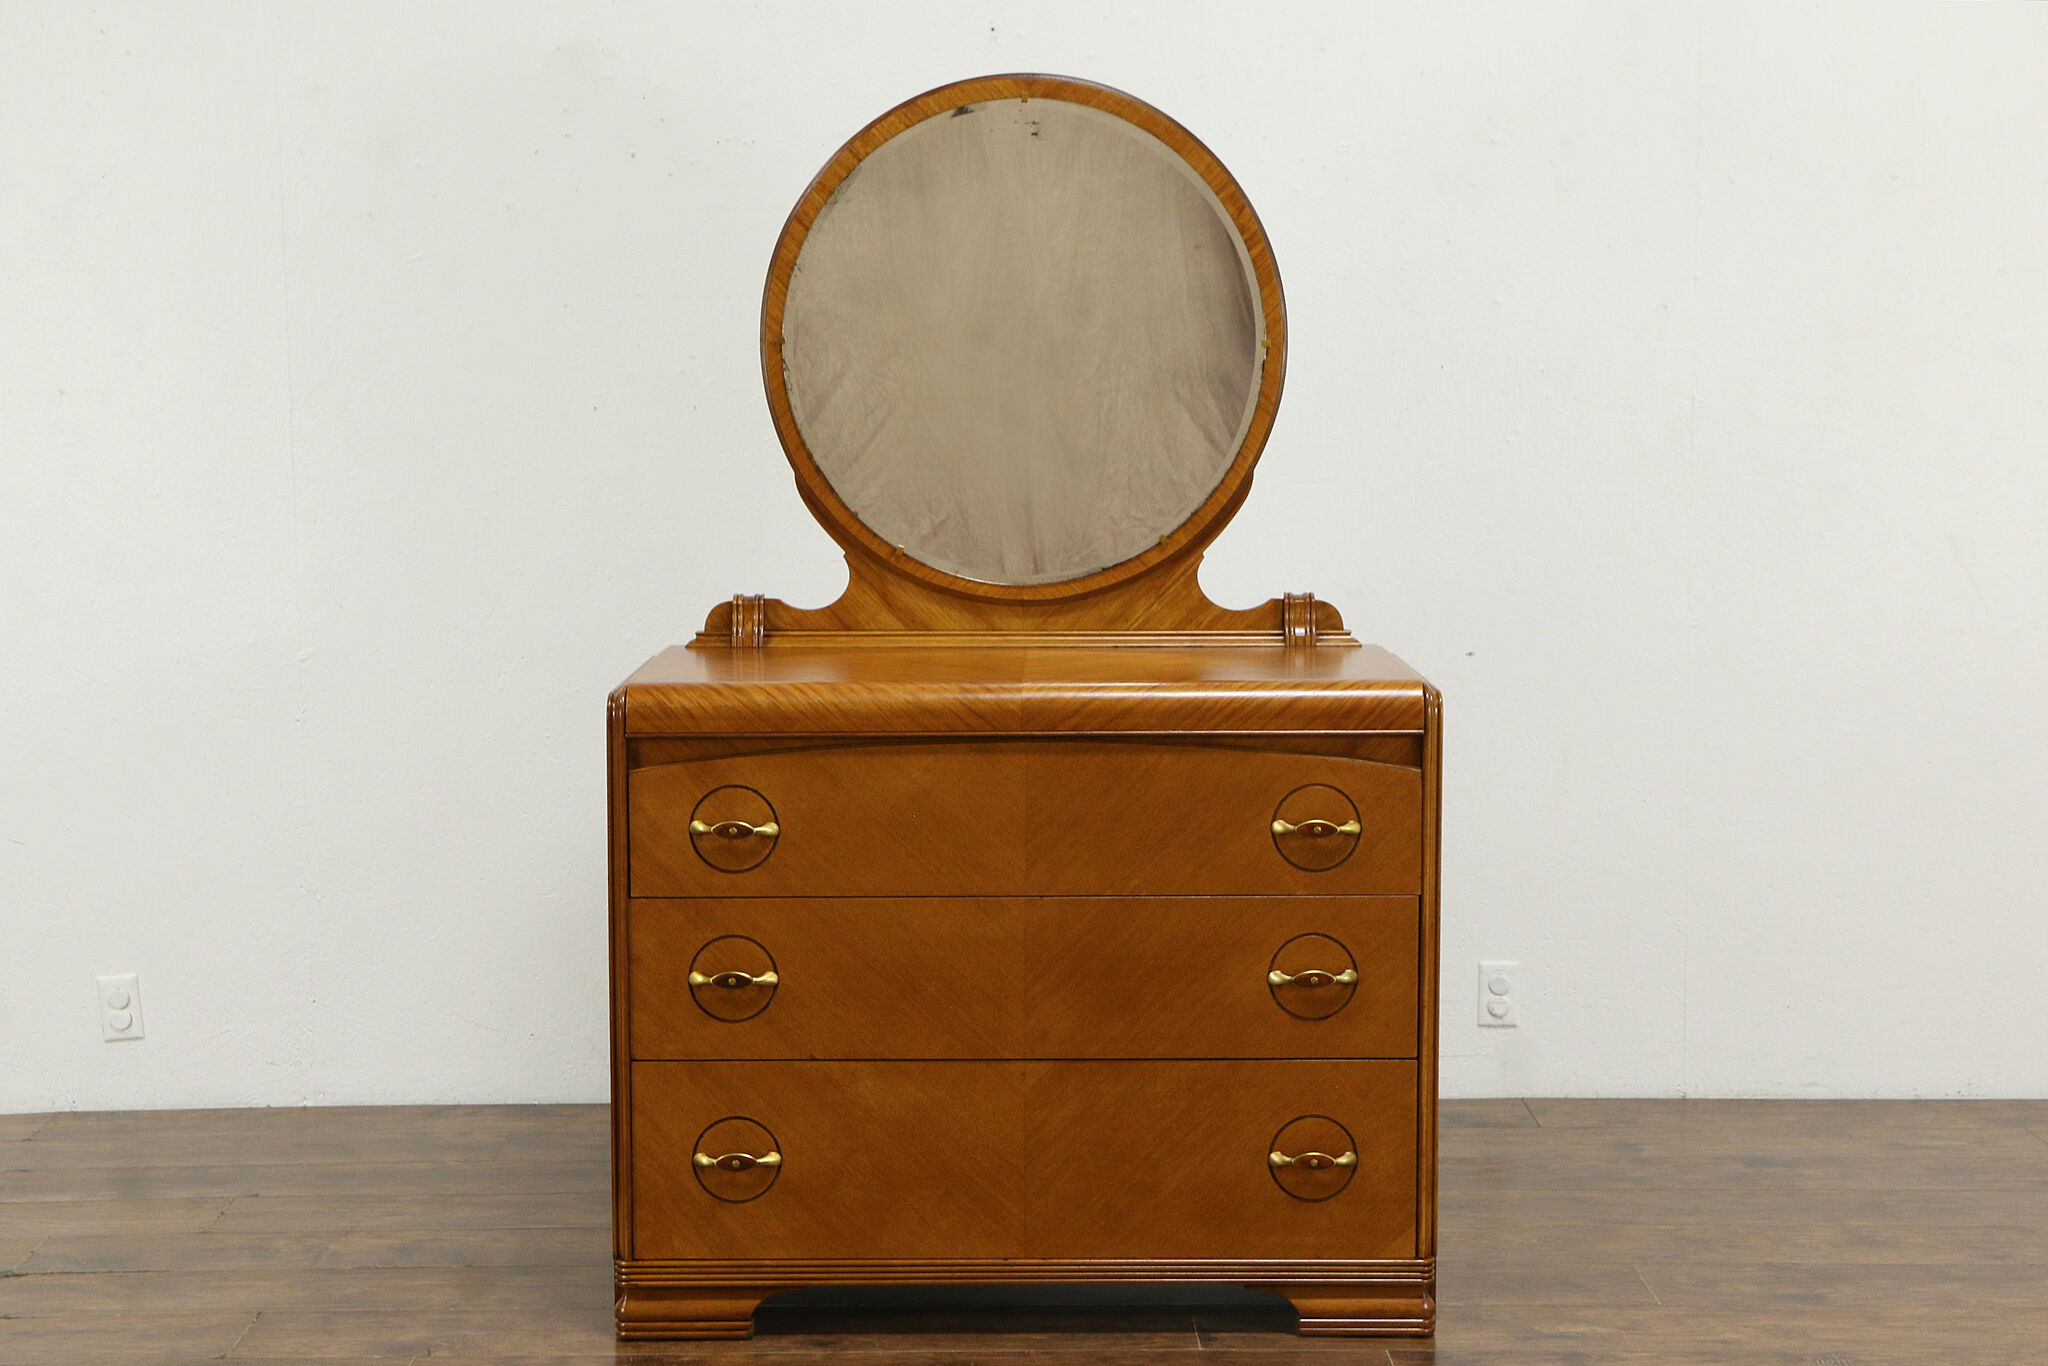 vintage dresser with mirror